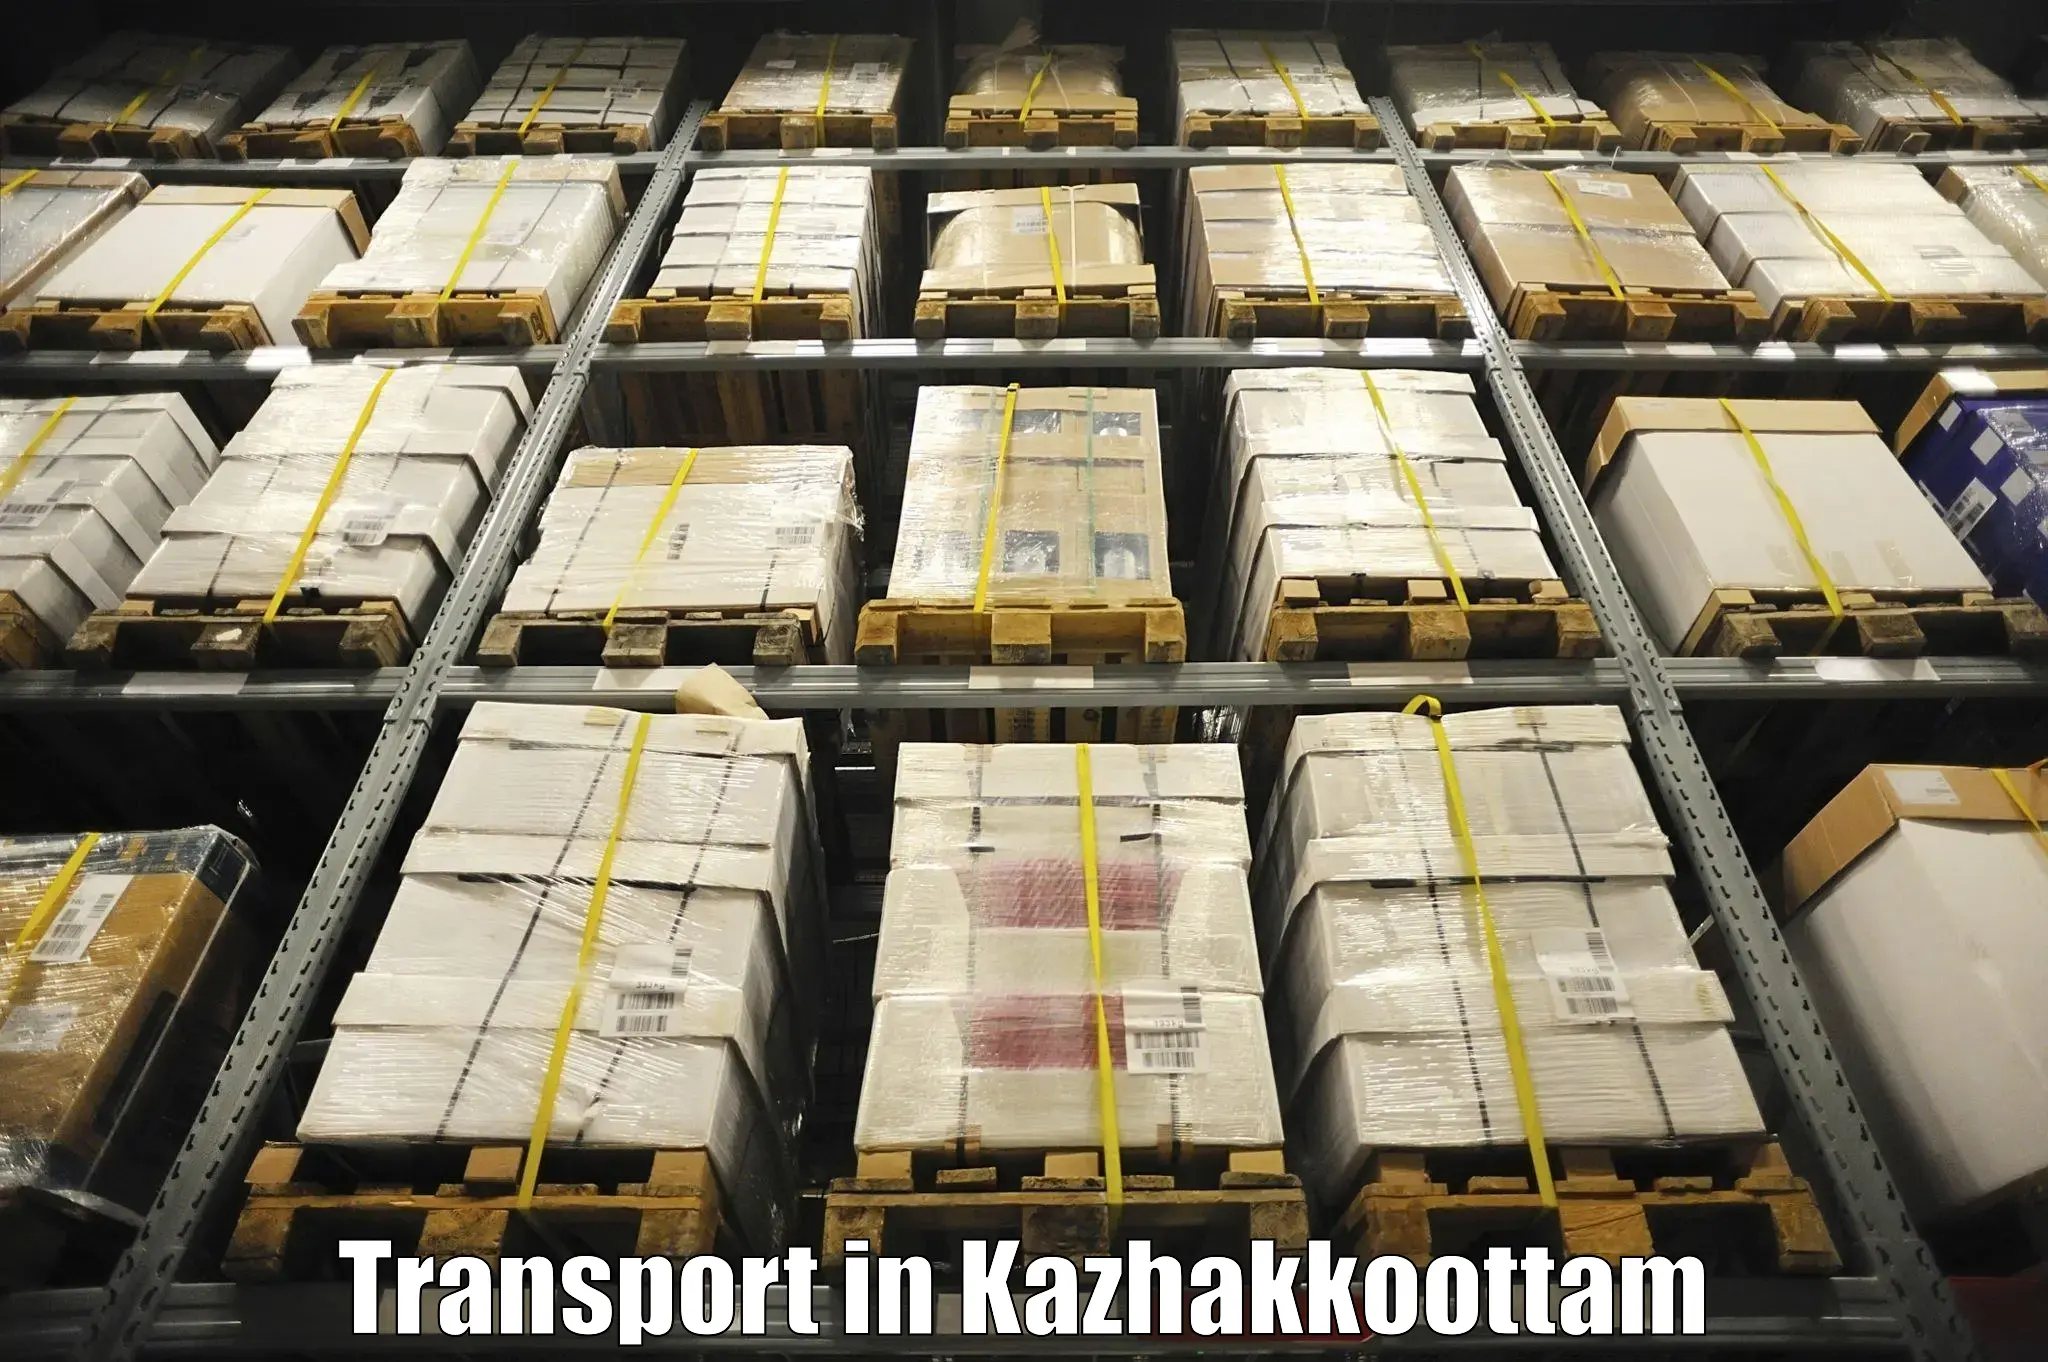 Express transport services in Kazhakkoottam